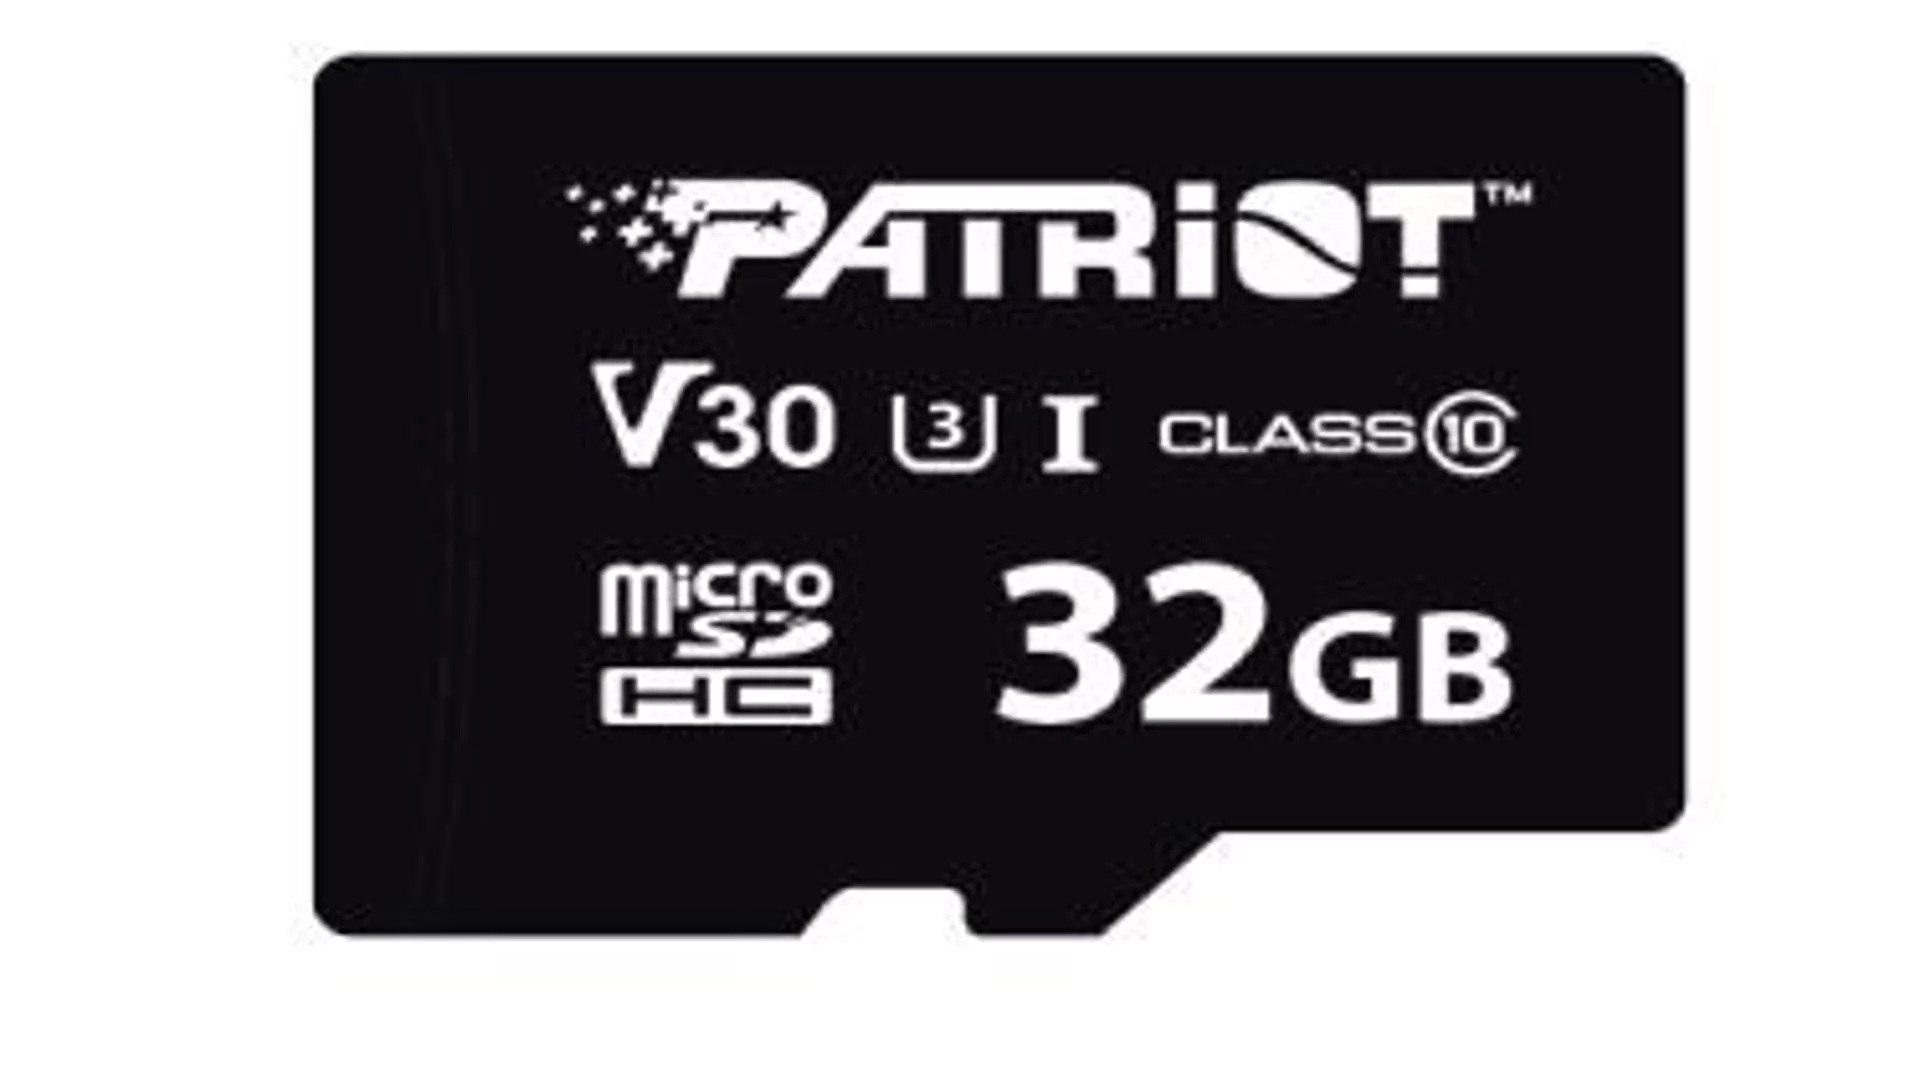 Patriot 32GB VX microSDHC UHS-I U3 V30 - darmowy odbiór w 22 miastach i bezpłatny zwrot Paczkomatem aż do 15 dni